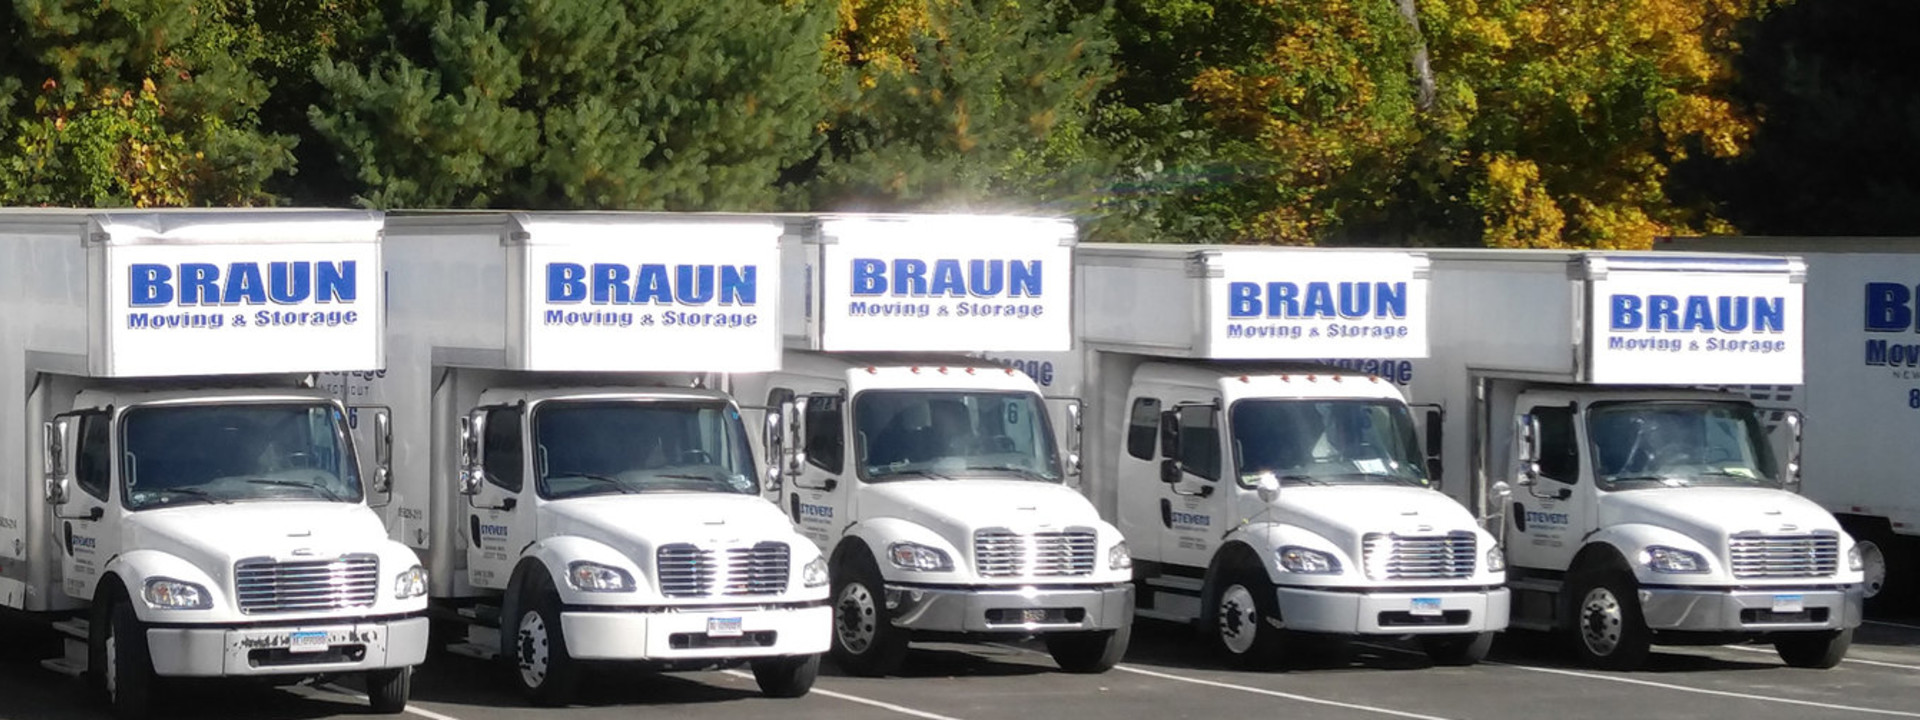 Brarun Moving & Storage